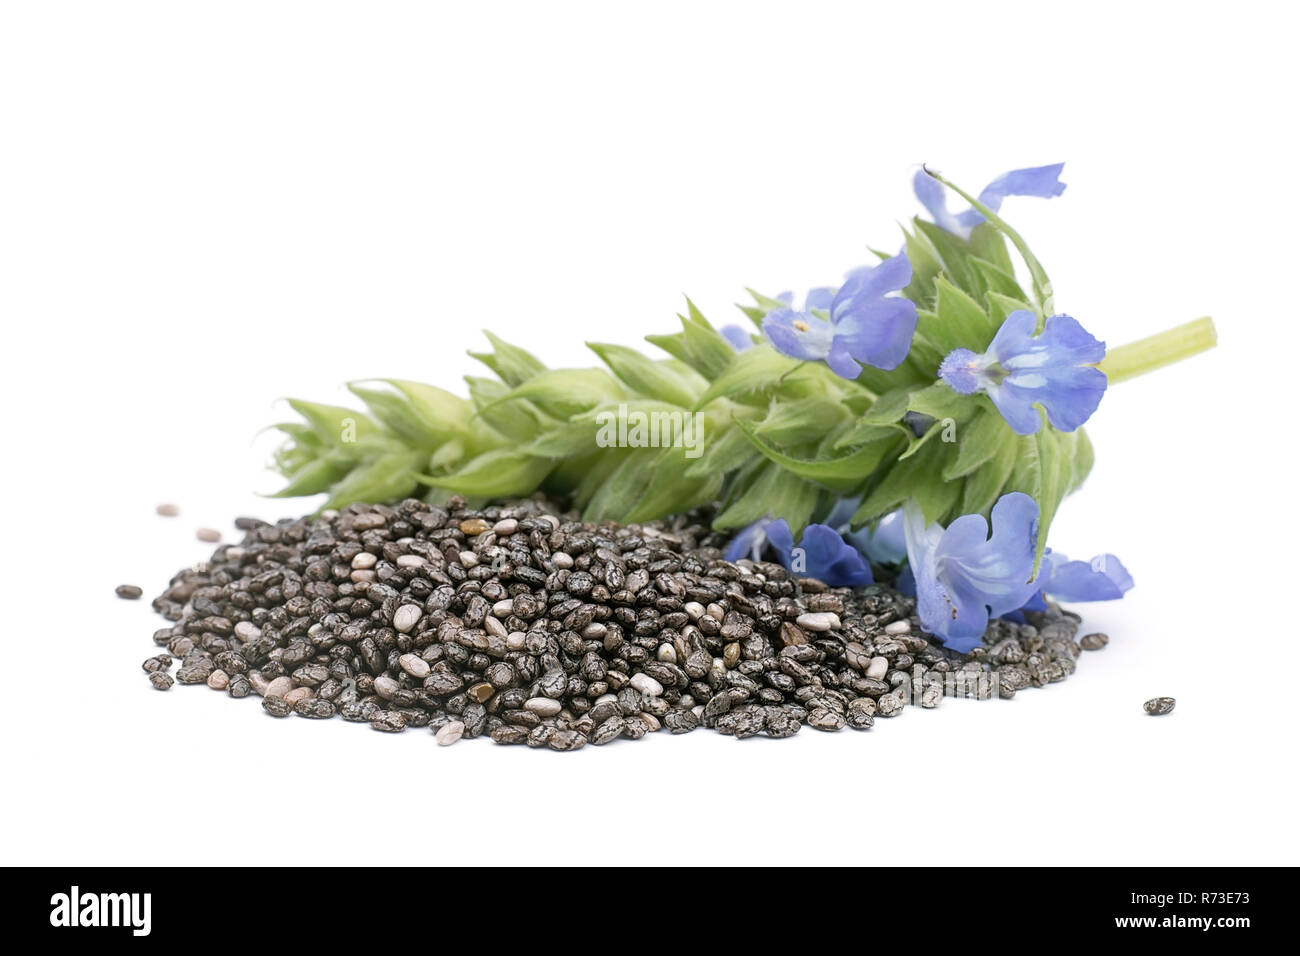 Chia (Salvia hispanica) Tas de graines de fleurs sur fond blanc Banque D'Images